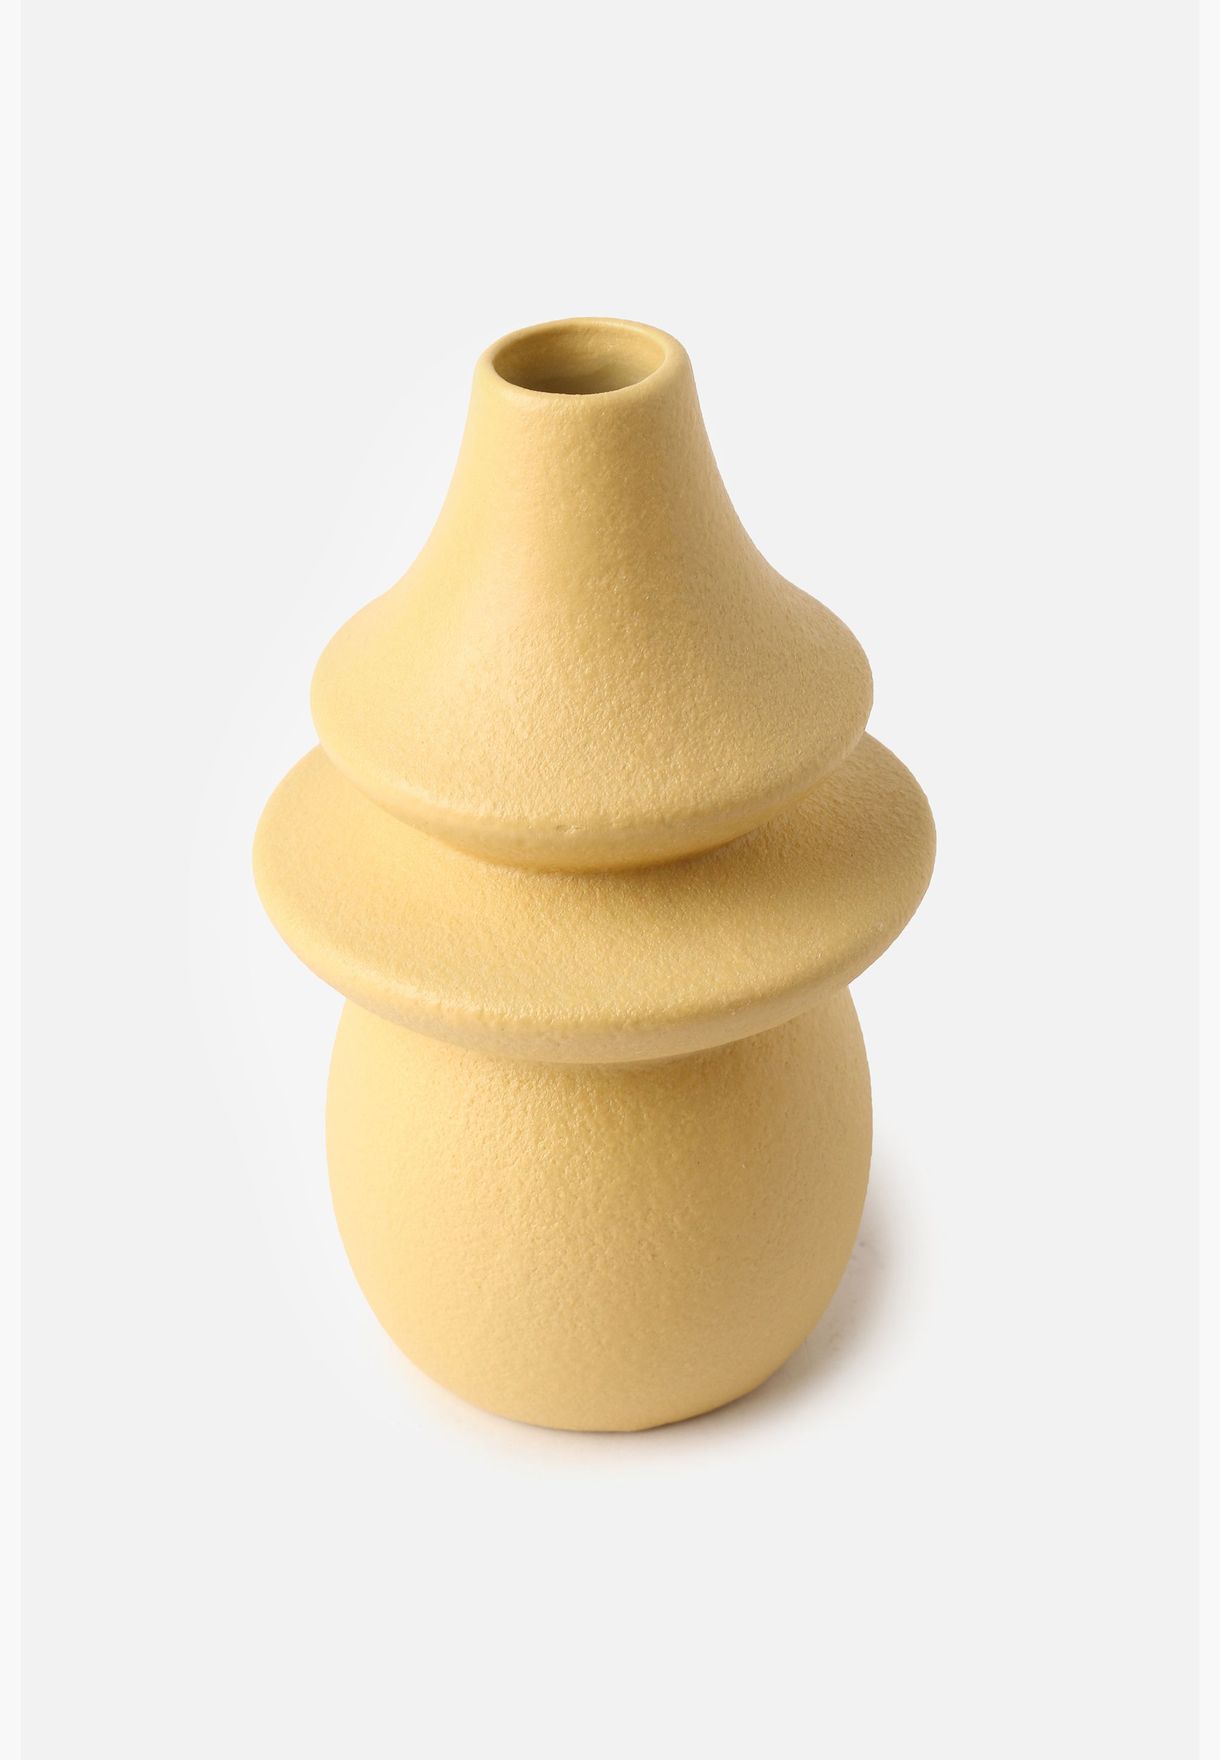 Minimalistic Modern Ceramic Flower Vase For Home Decor 